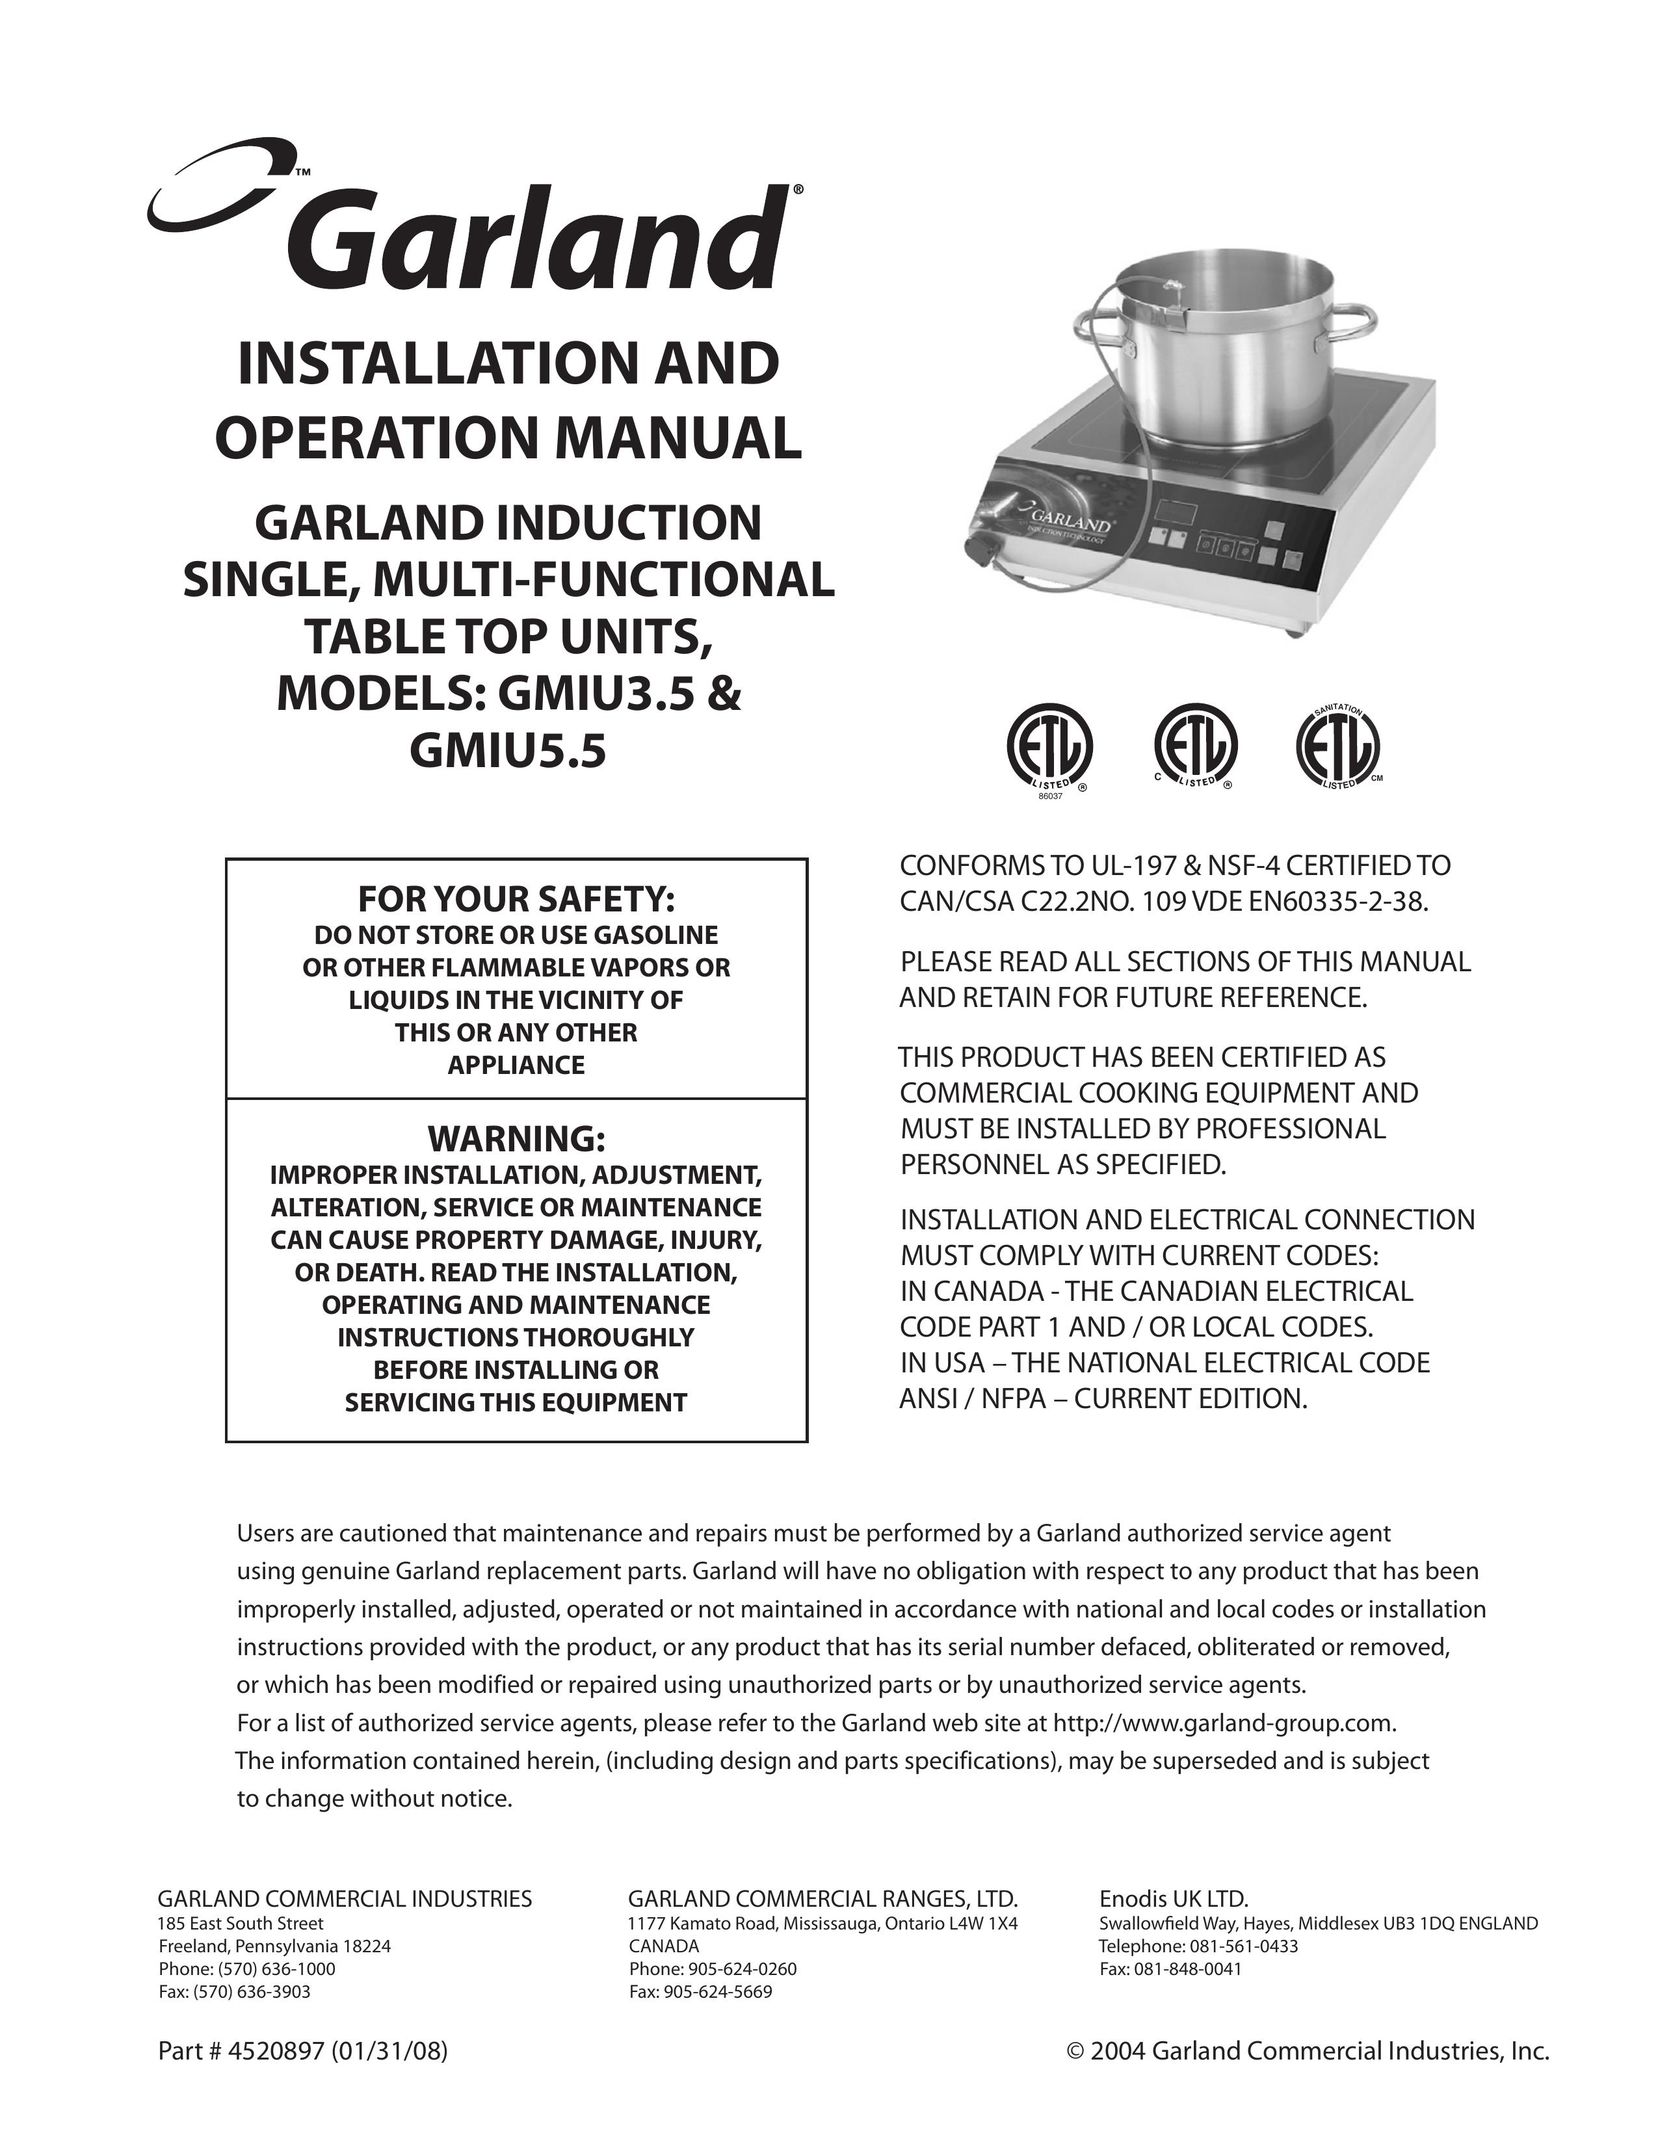 Garland GMIU5.5 Cooktop User Manual